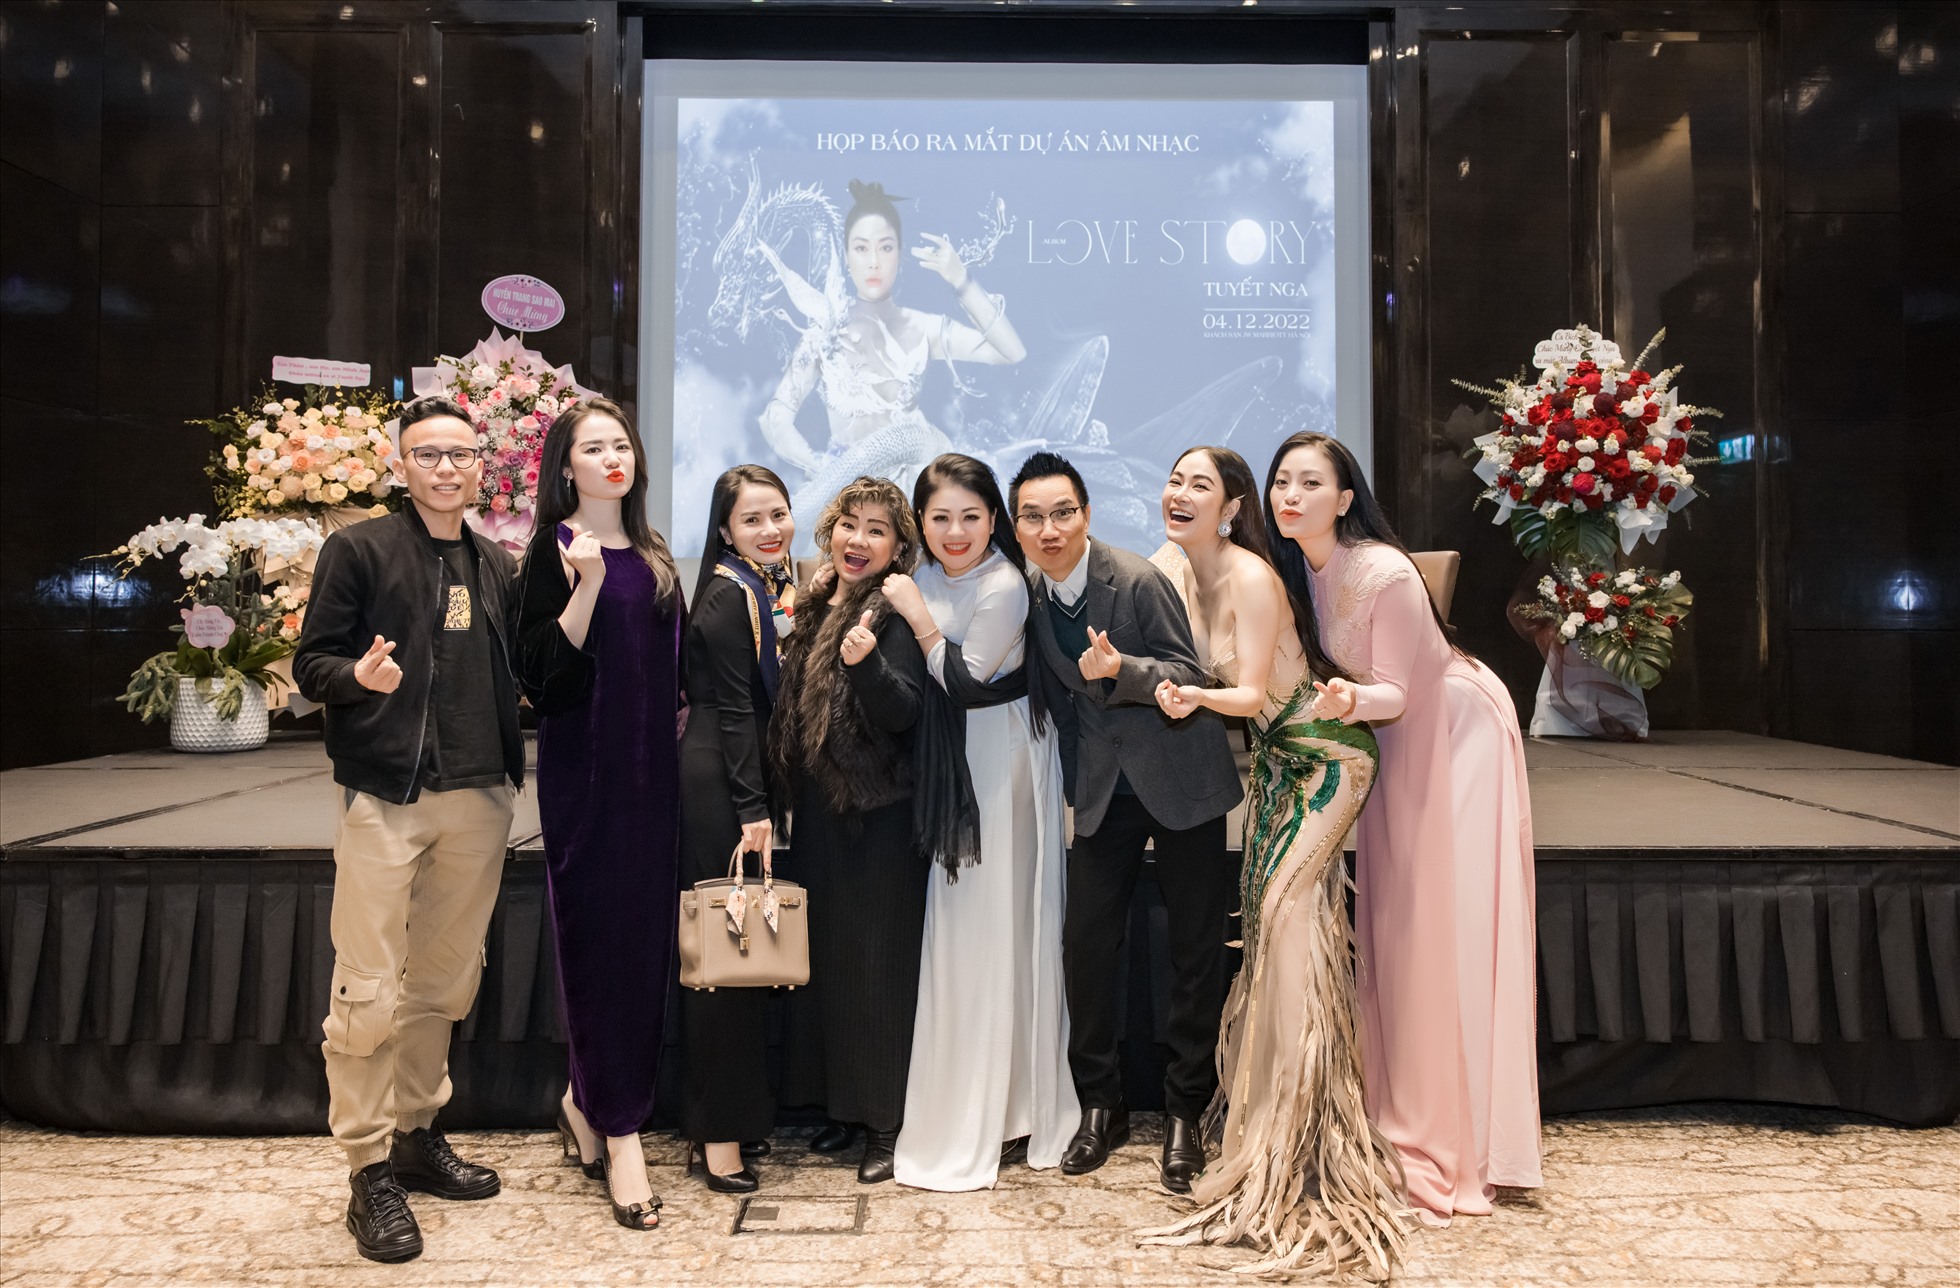 Nhiều anh chị em nghệ sĩ đến chúc mừng và ủng hộ Hoa hậu Tuyết Nga trong buổi giới thiệu album đầu tay. Ảnh: Nhân vật cung cấp